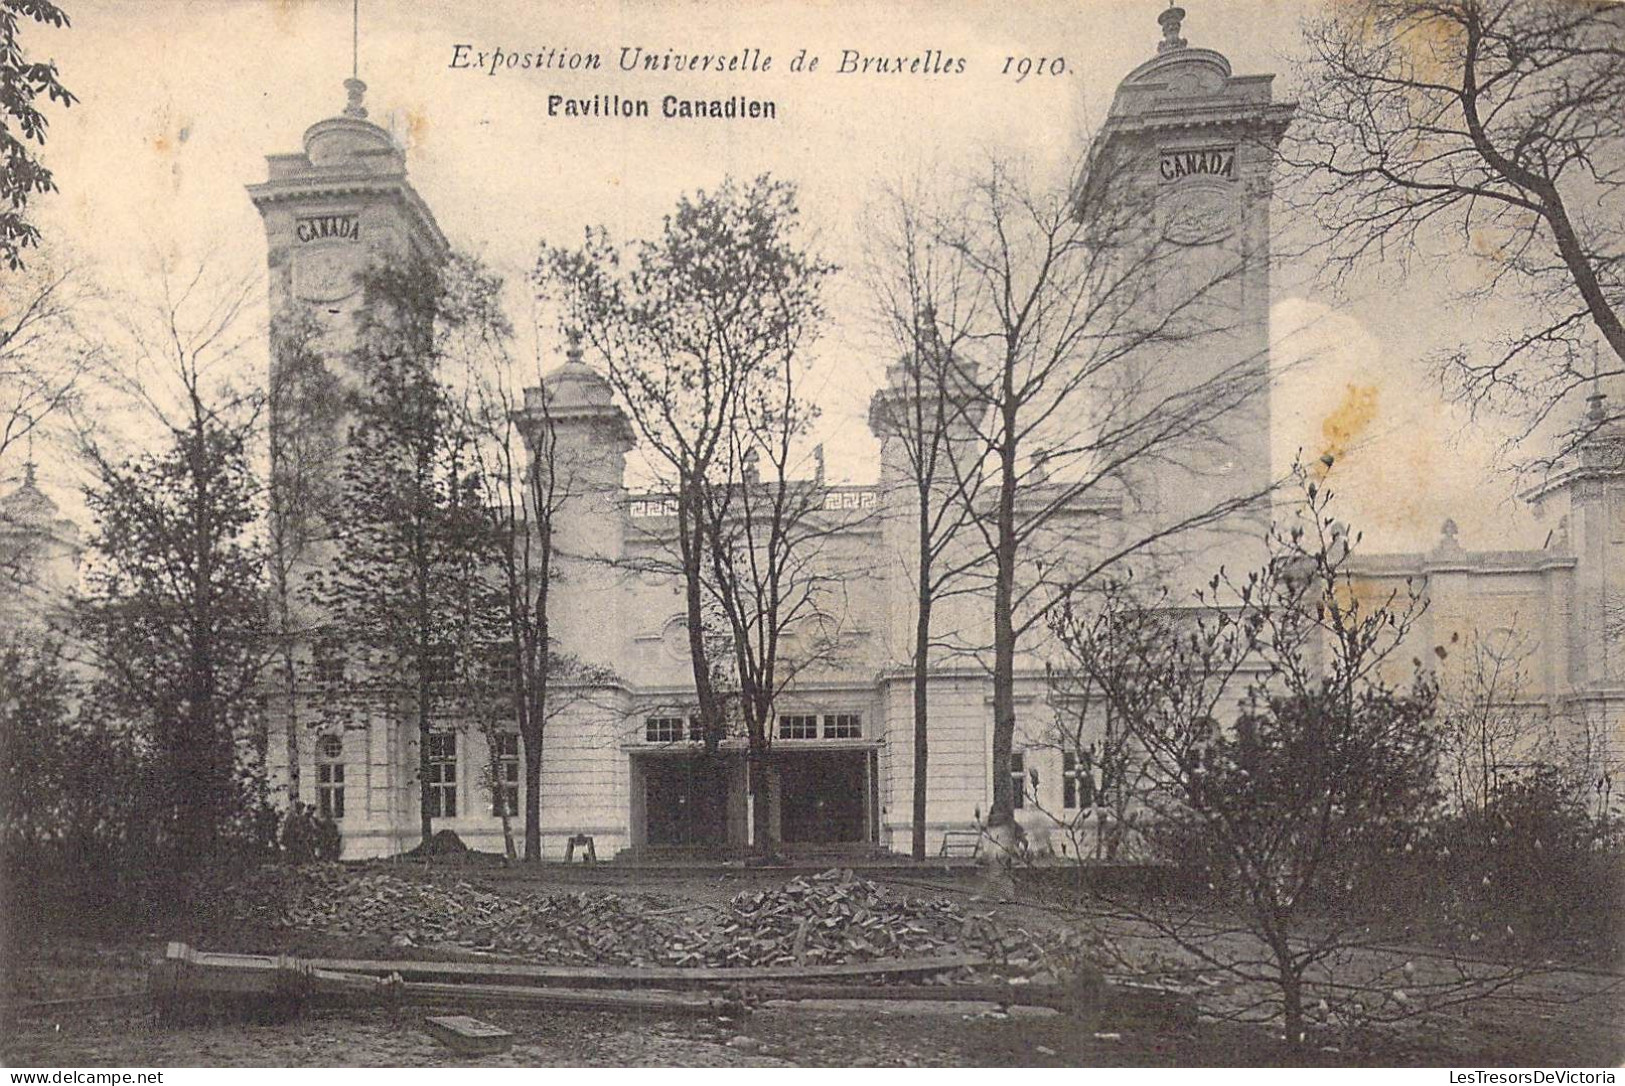 BELGIQUE - Bruxelles - Expositions Universelle De Bruxelles 1910 - Pavillon Canadien - Carte Postale Ancienne - Mostre Universali